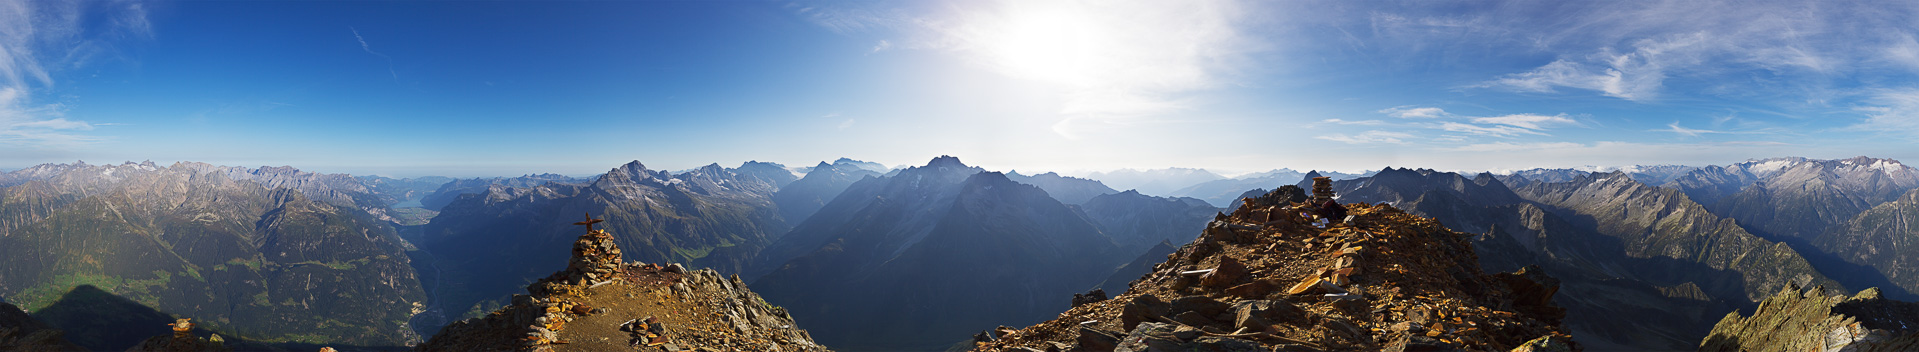 Gipfelpanorama mit weit schweifendem Blick über die Urner und Glarner Alpen.